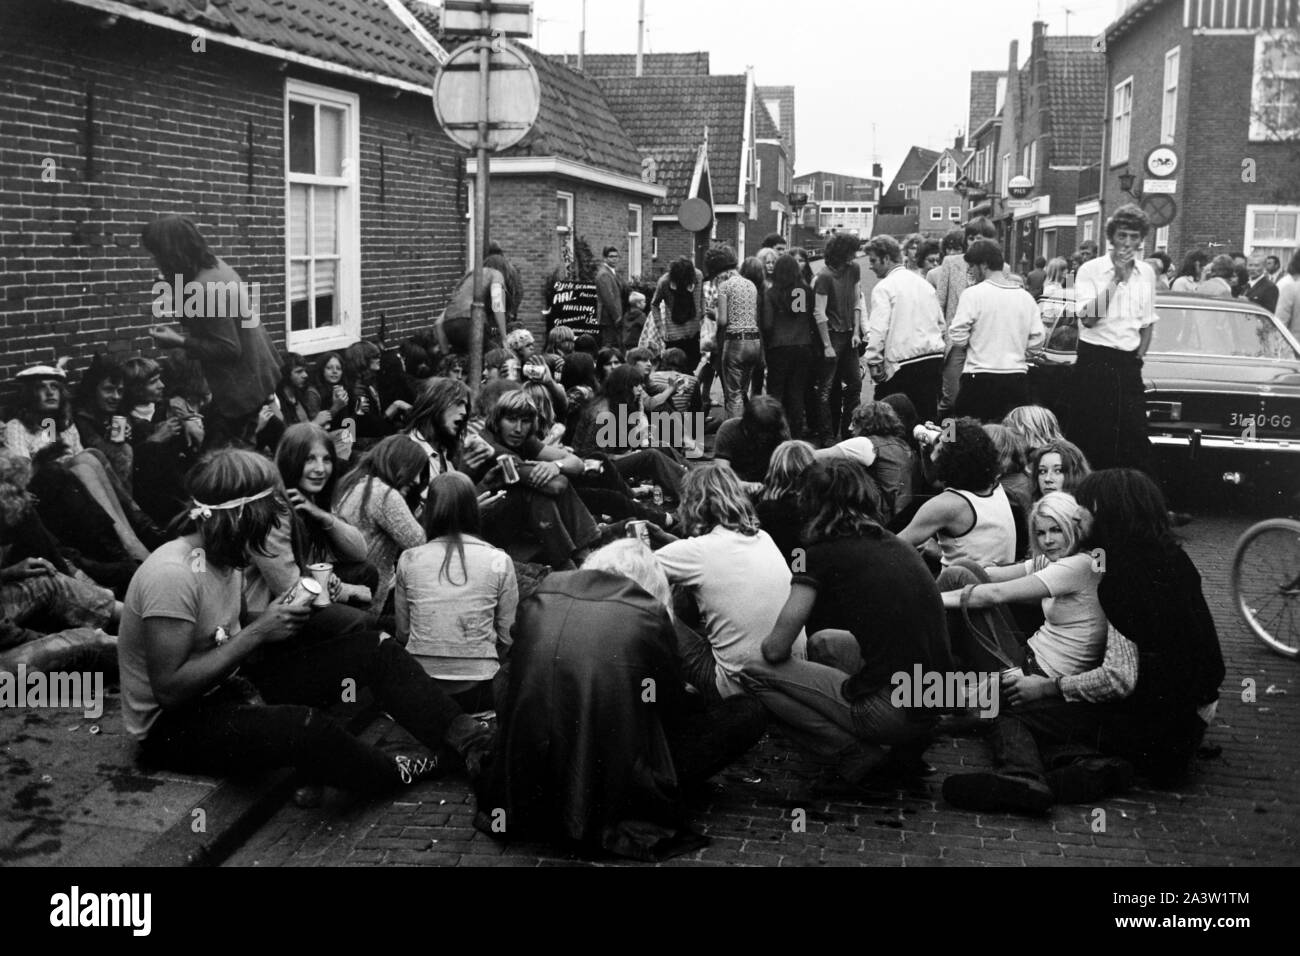 Gammler und Hippies machen ein Sit in in den strassen von Amsterdam Niederlande 1971. Deadbets e hippies facendo un sit in per le strade di Amsterdam, Paesi Bassi 1971. Foto Stock